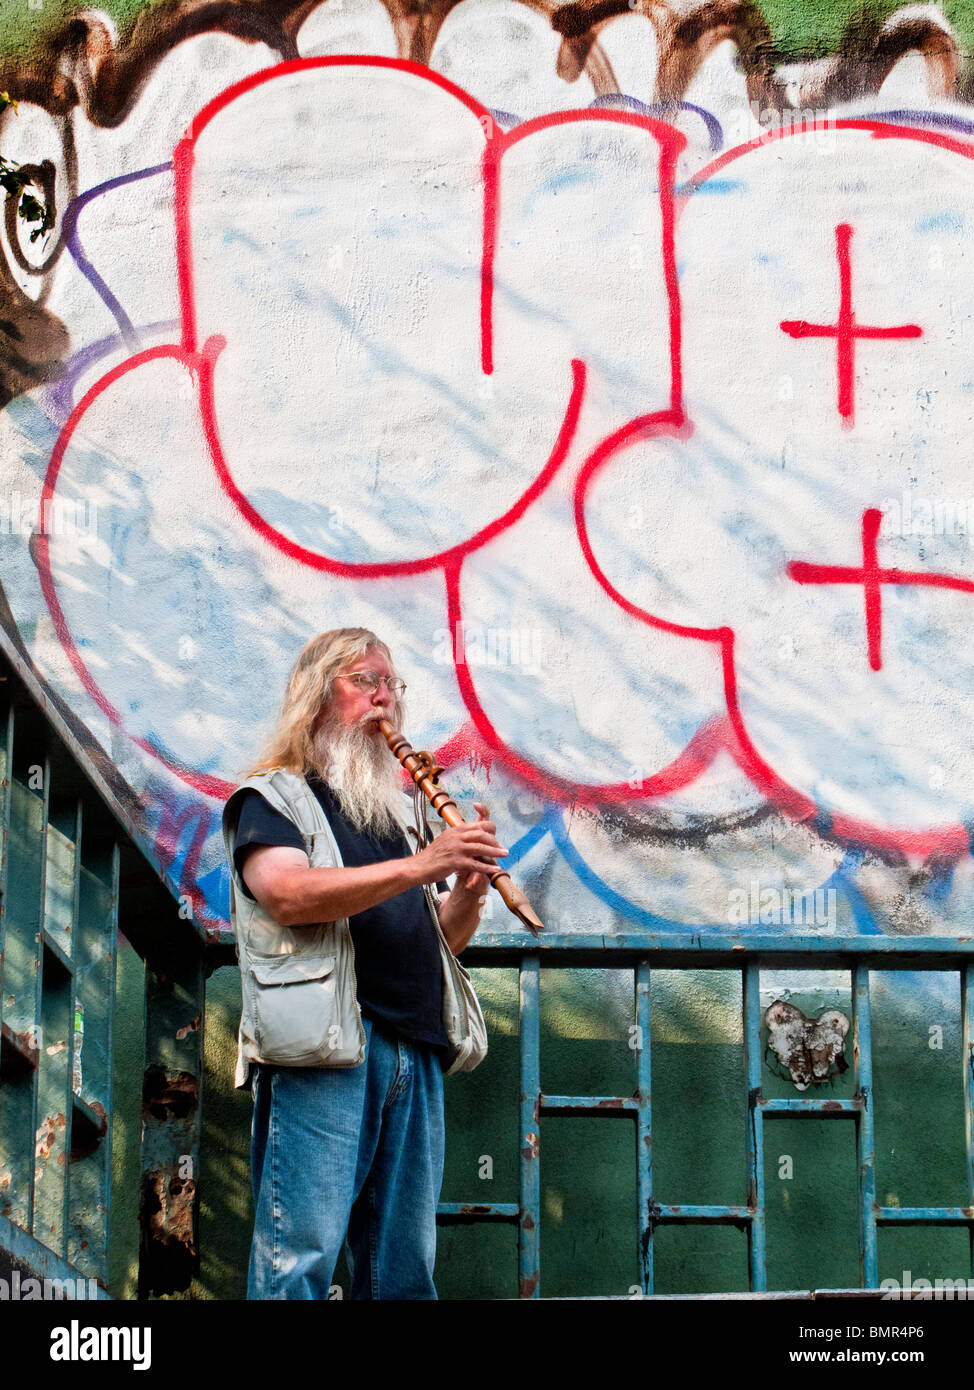 Gegenübergestellt mit einer großen Bande Grafitti, spielt bärtiger Straßenmusiker seine Querflöte in New Yorks Lower East Side. Stockfoto